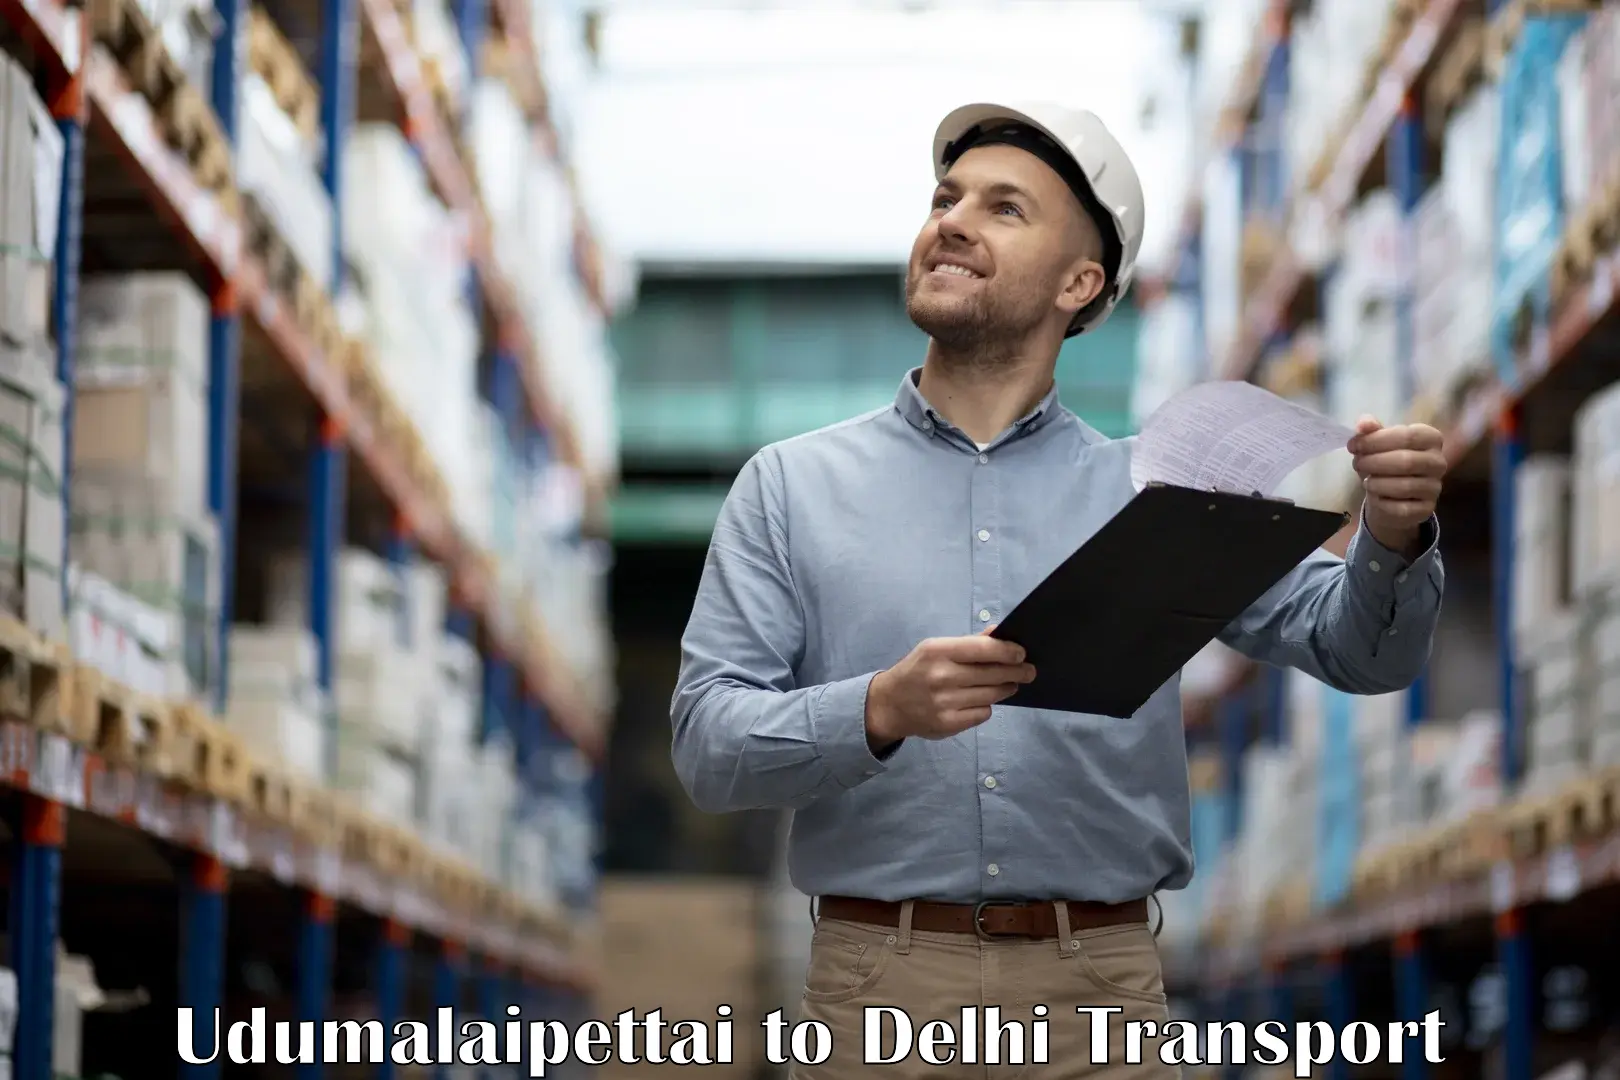 Goods delivery service Udumalaipettai to Delhi